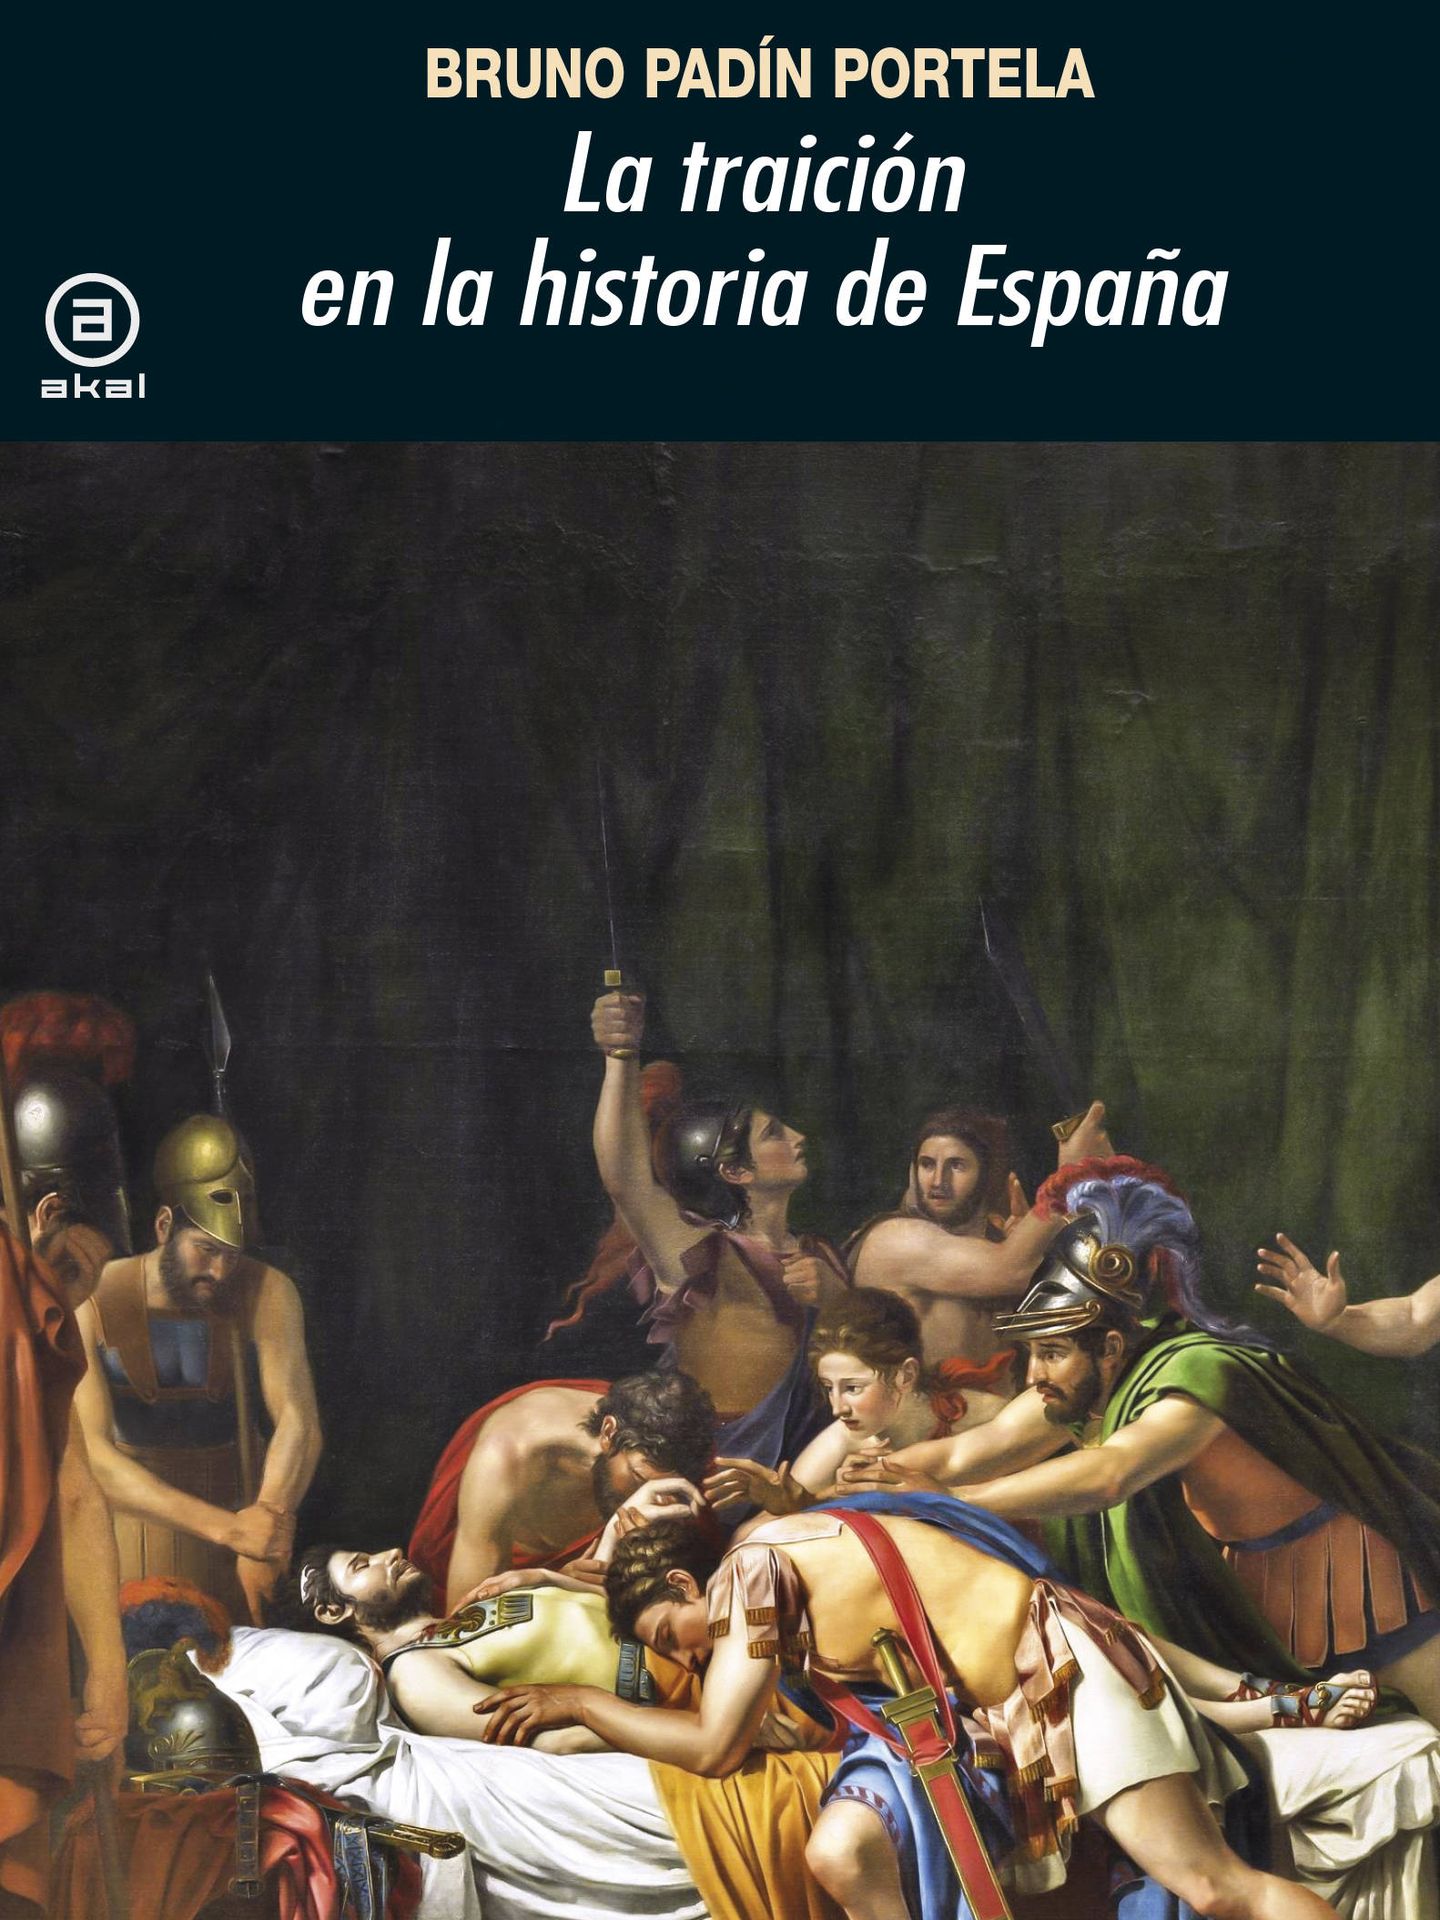 'La traición en la historia de España'.